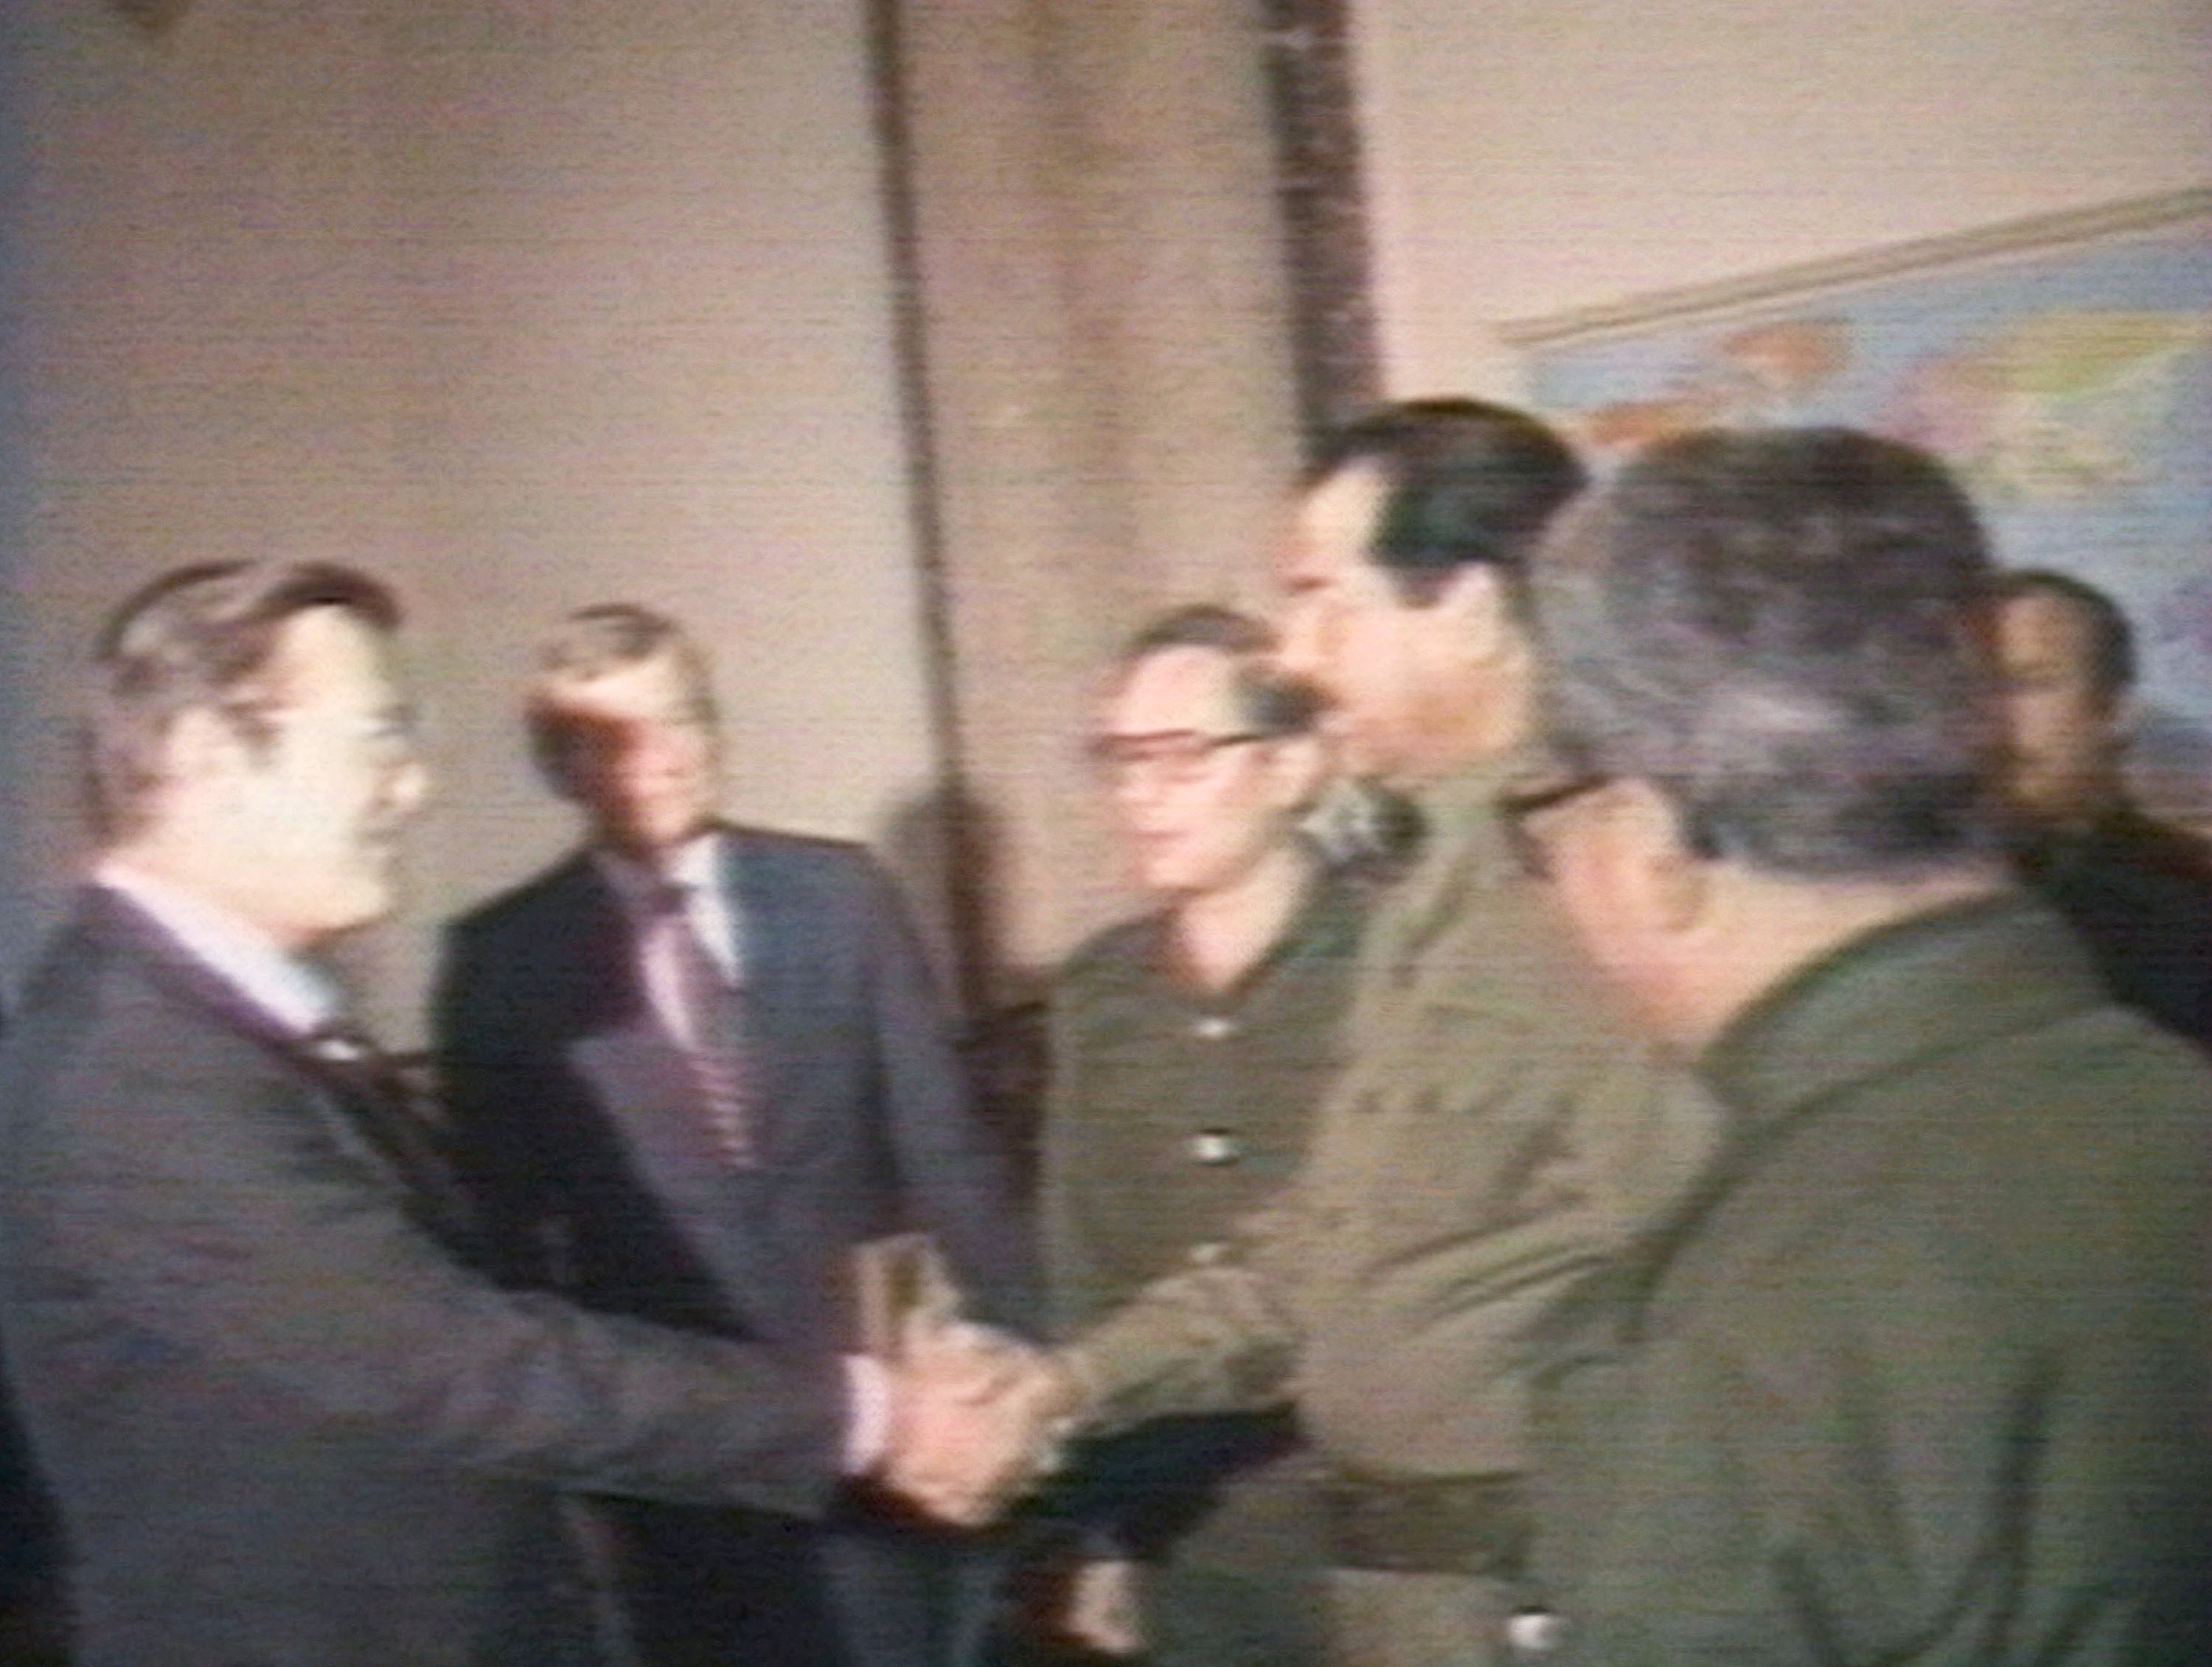 Rumsfeld met with Saddam Hussein in Iraq in 1983